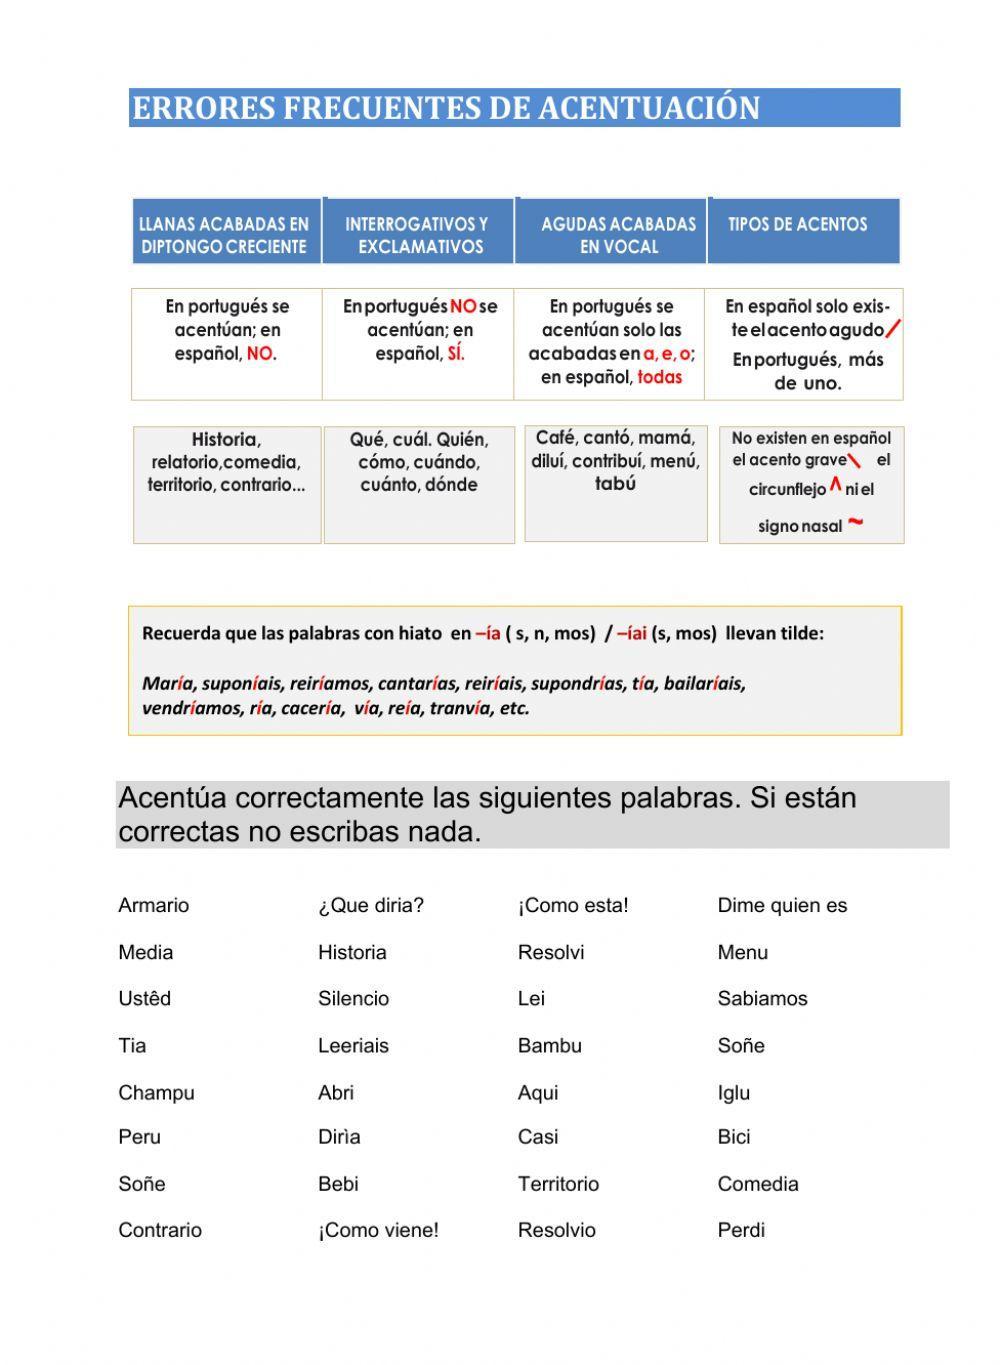 Errores de acentuación de español en lusófonos